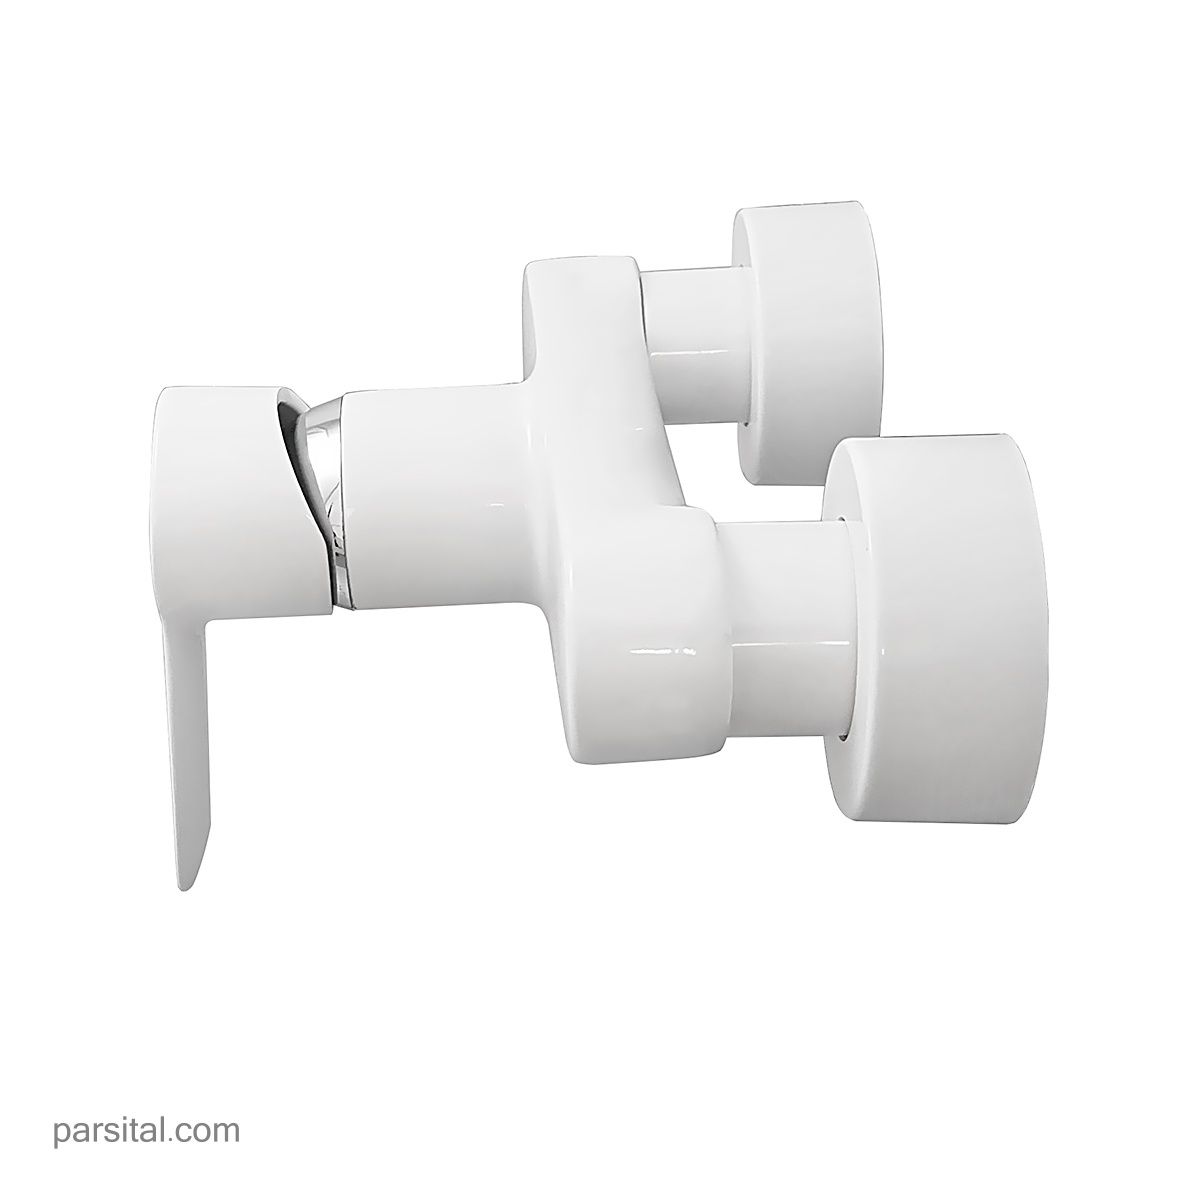 شیر توالت کی دبلیو سی مدل ریتا سفید